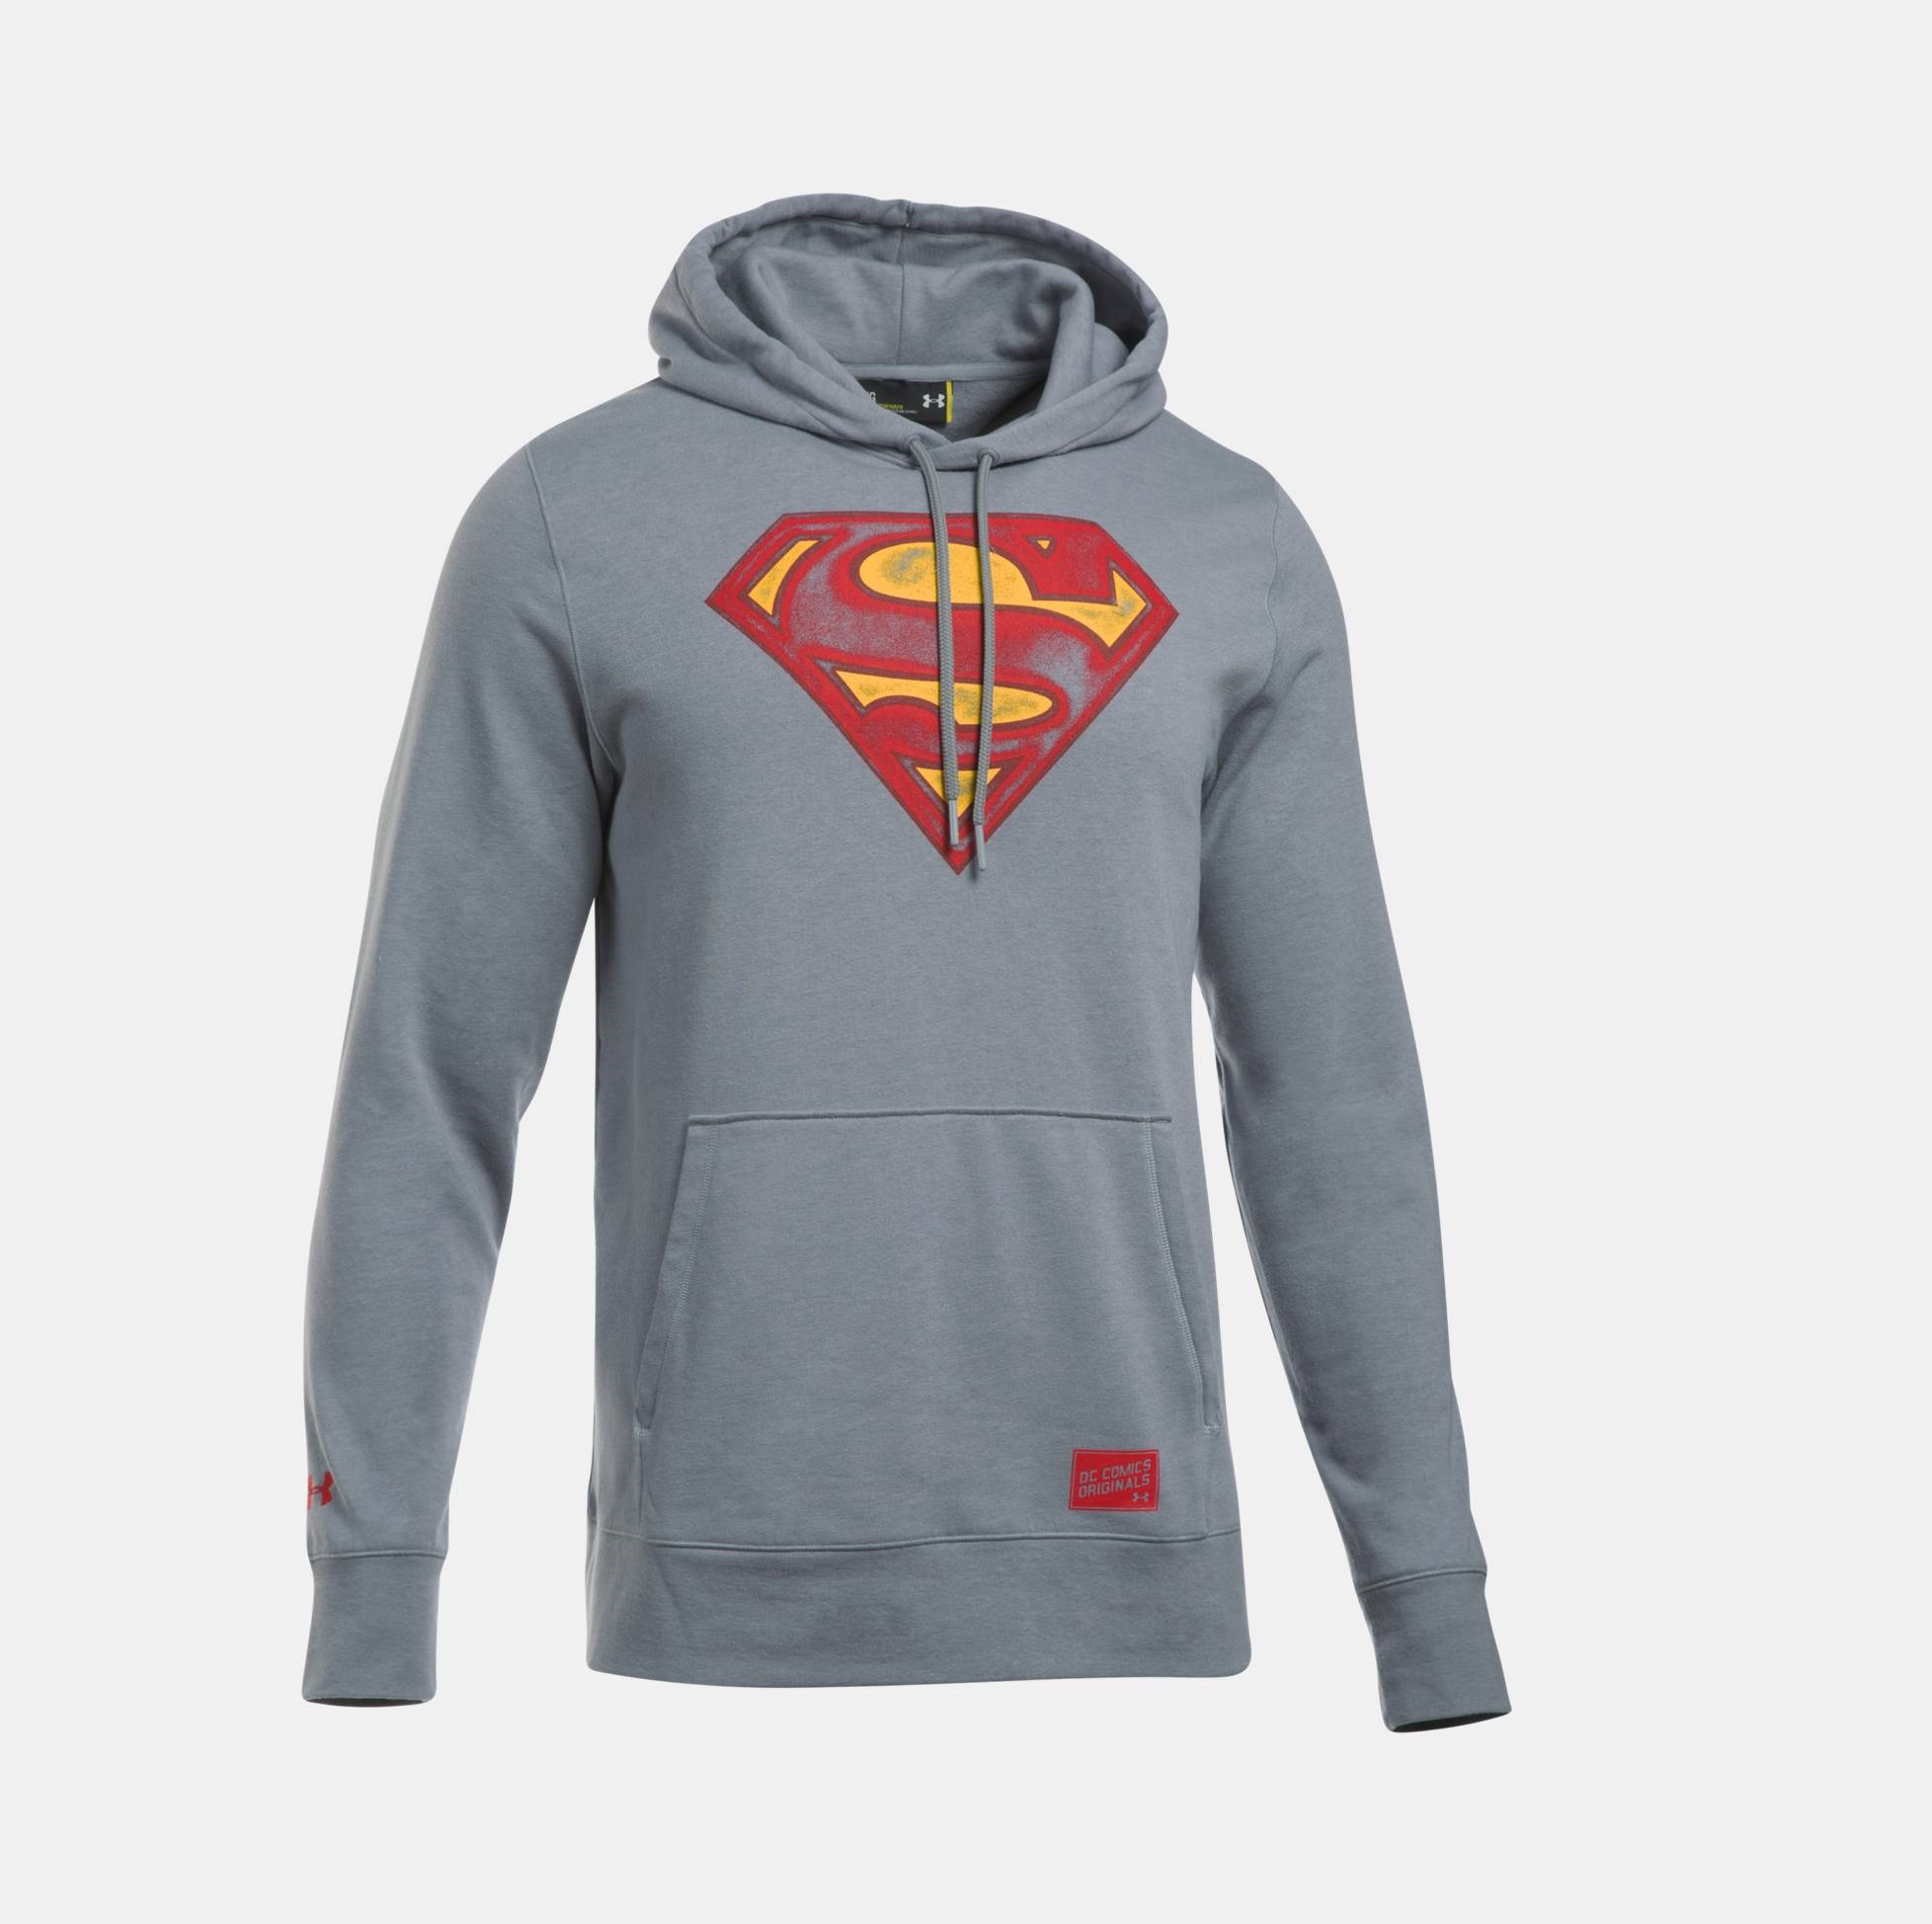 superman hoodie